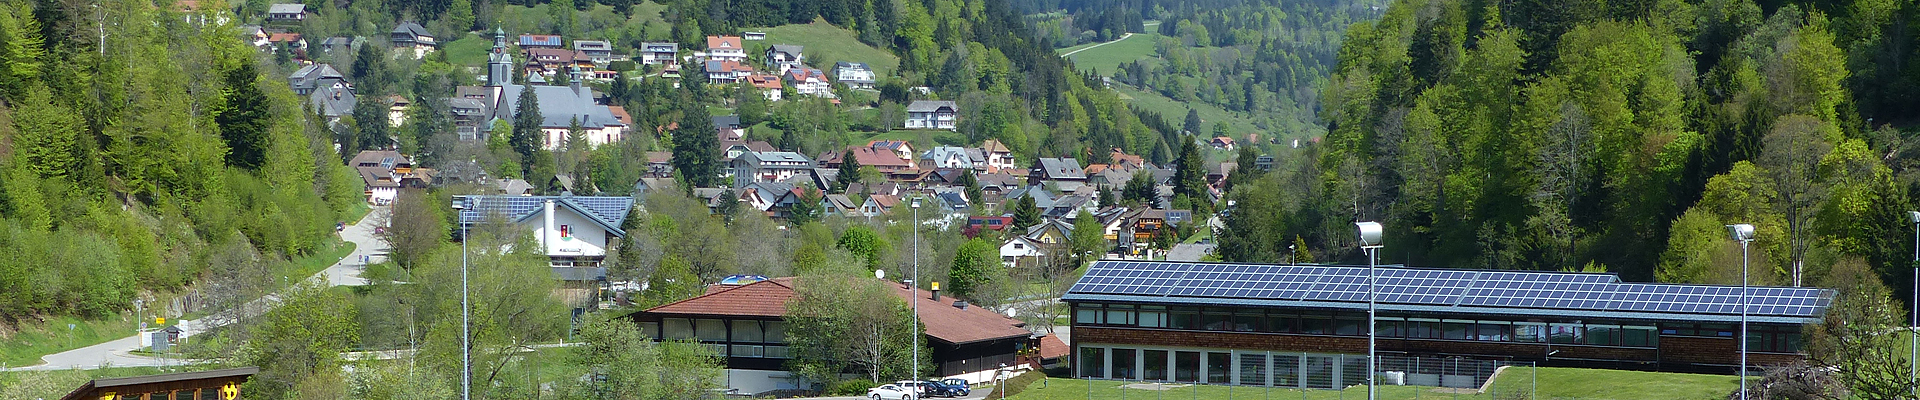 Grundschule Todtmoos im Südschwarzwald